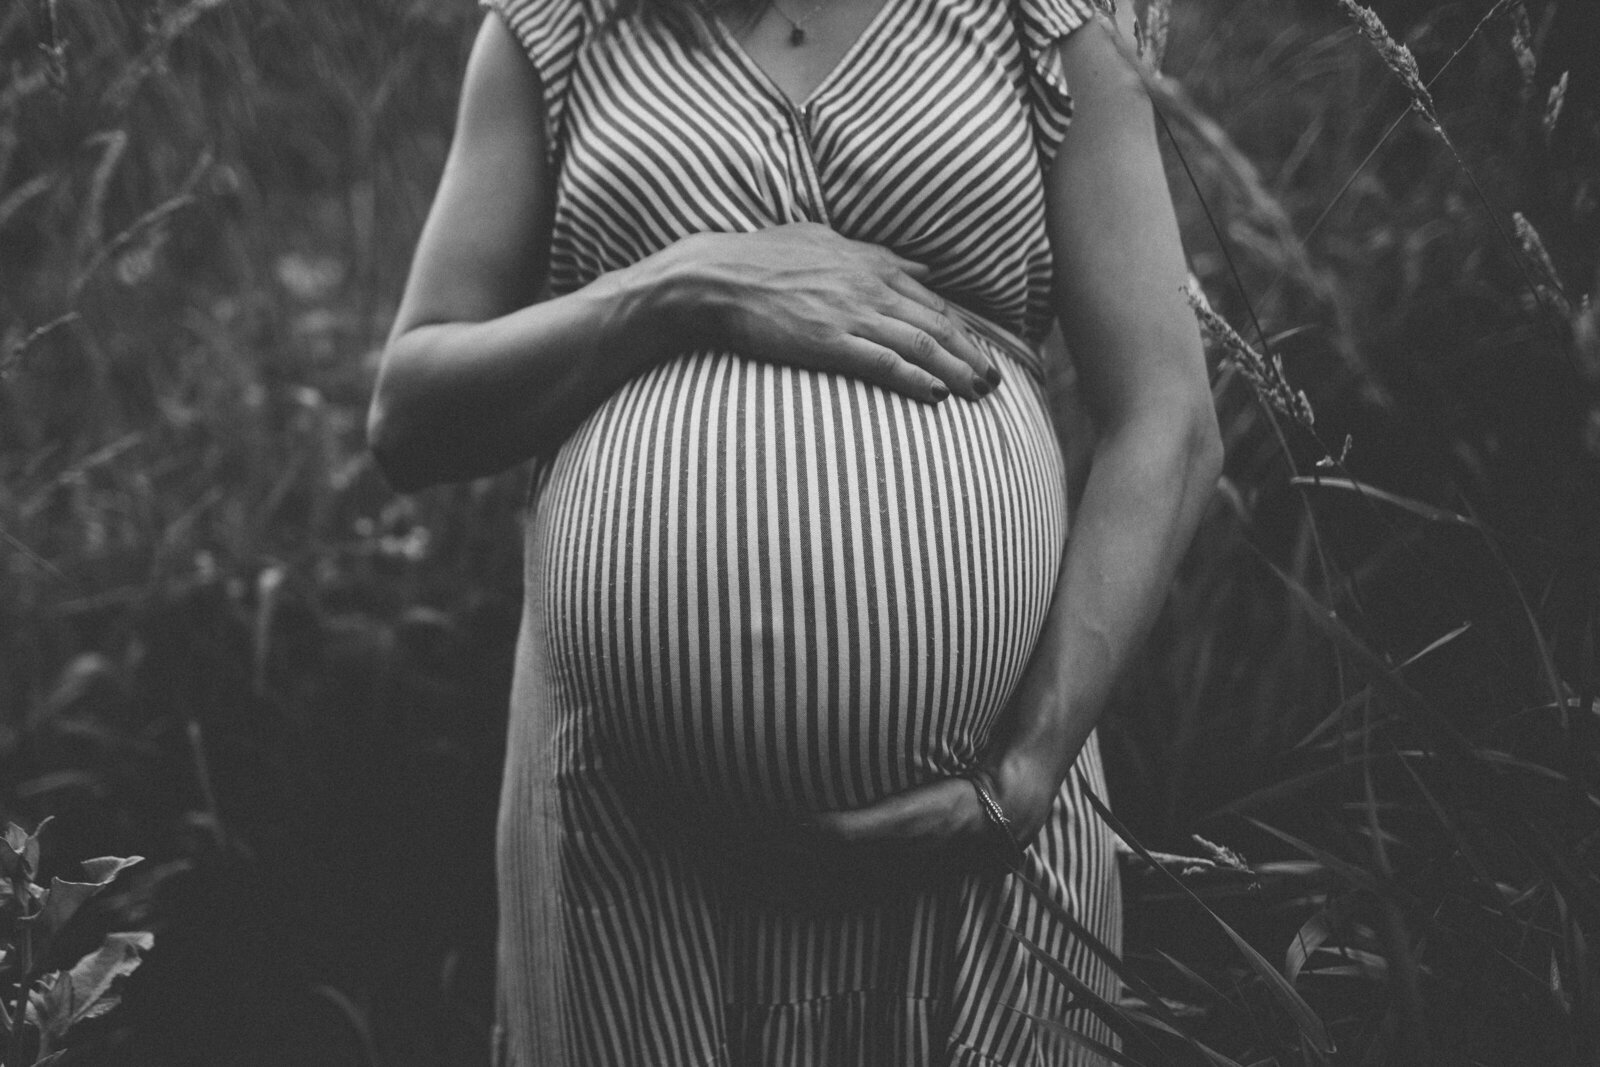 Madison Maternity Photographer